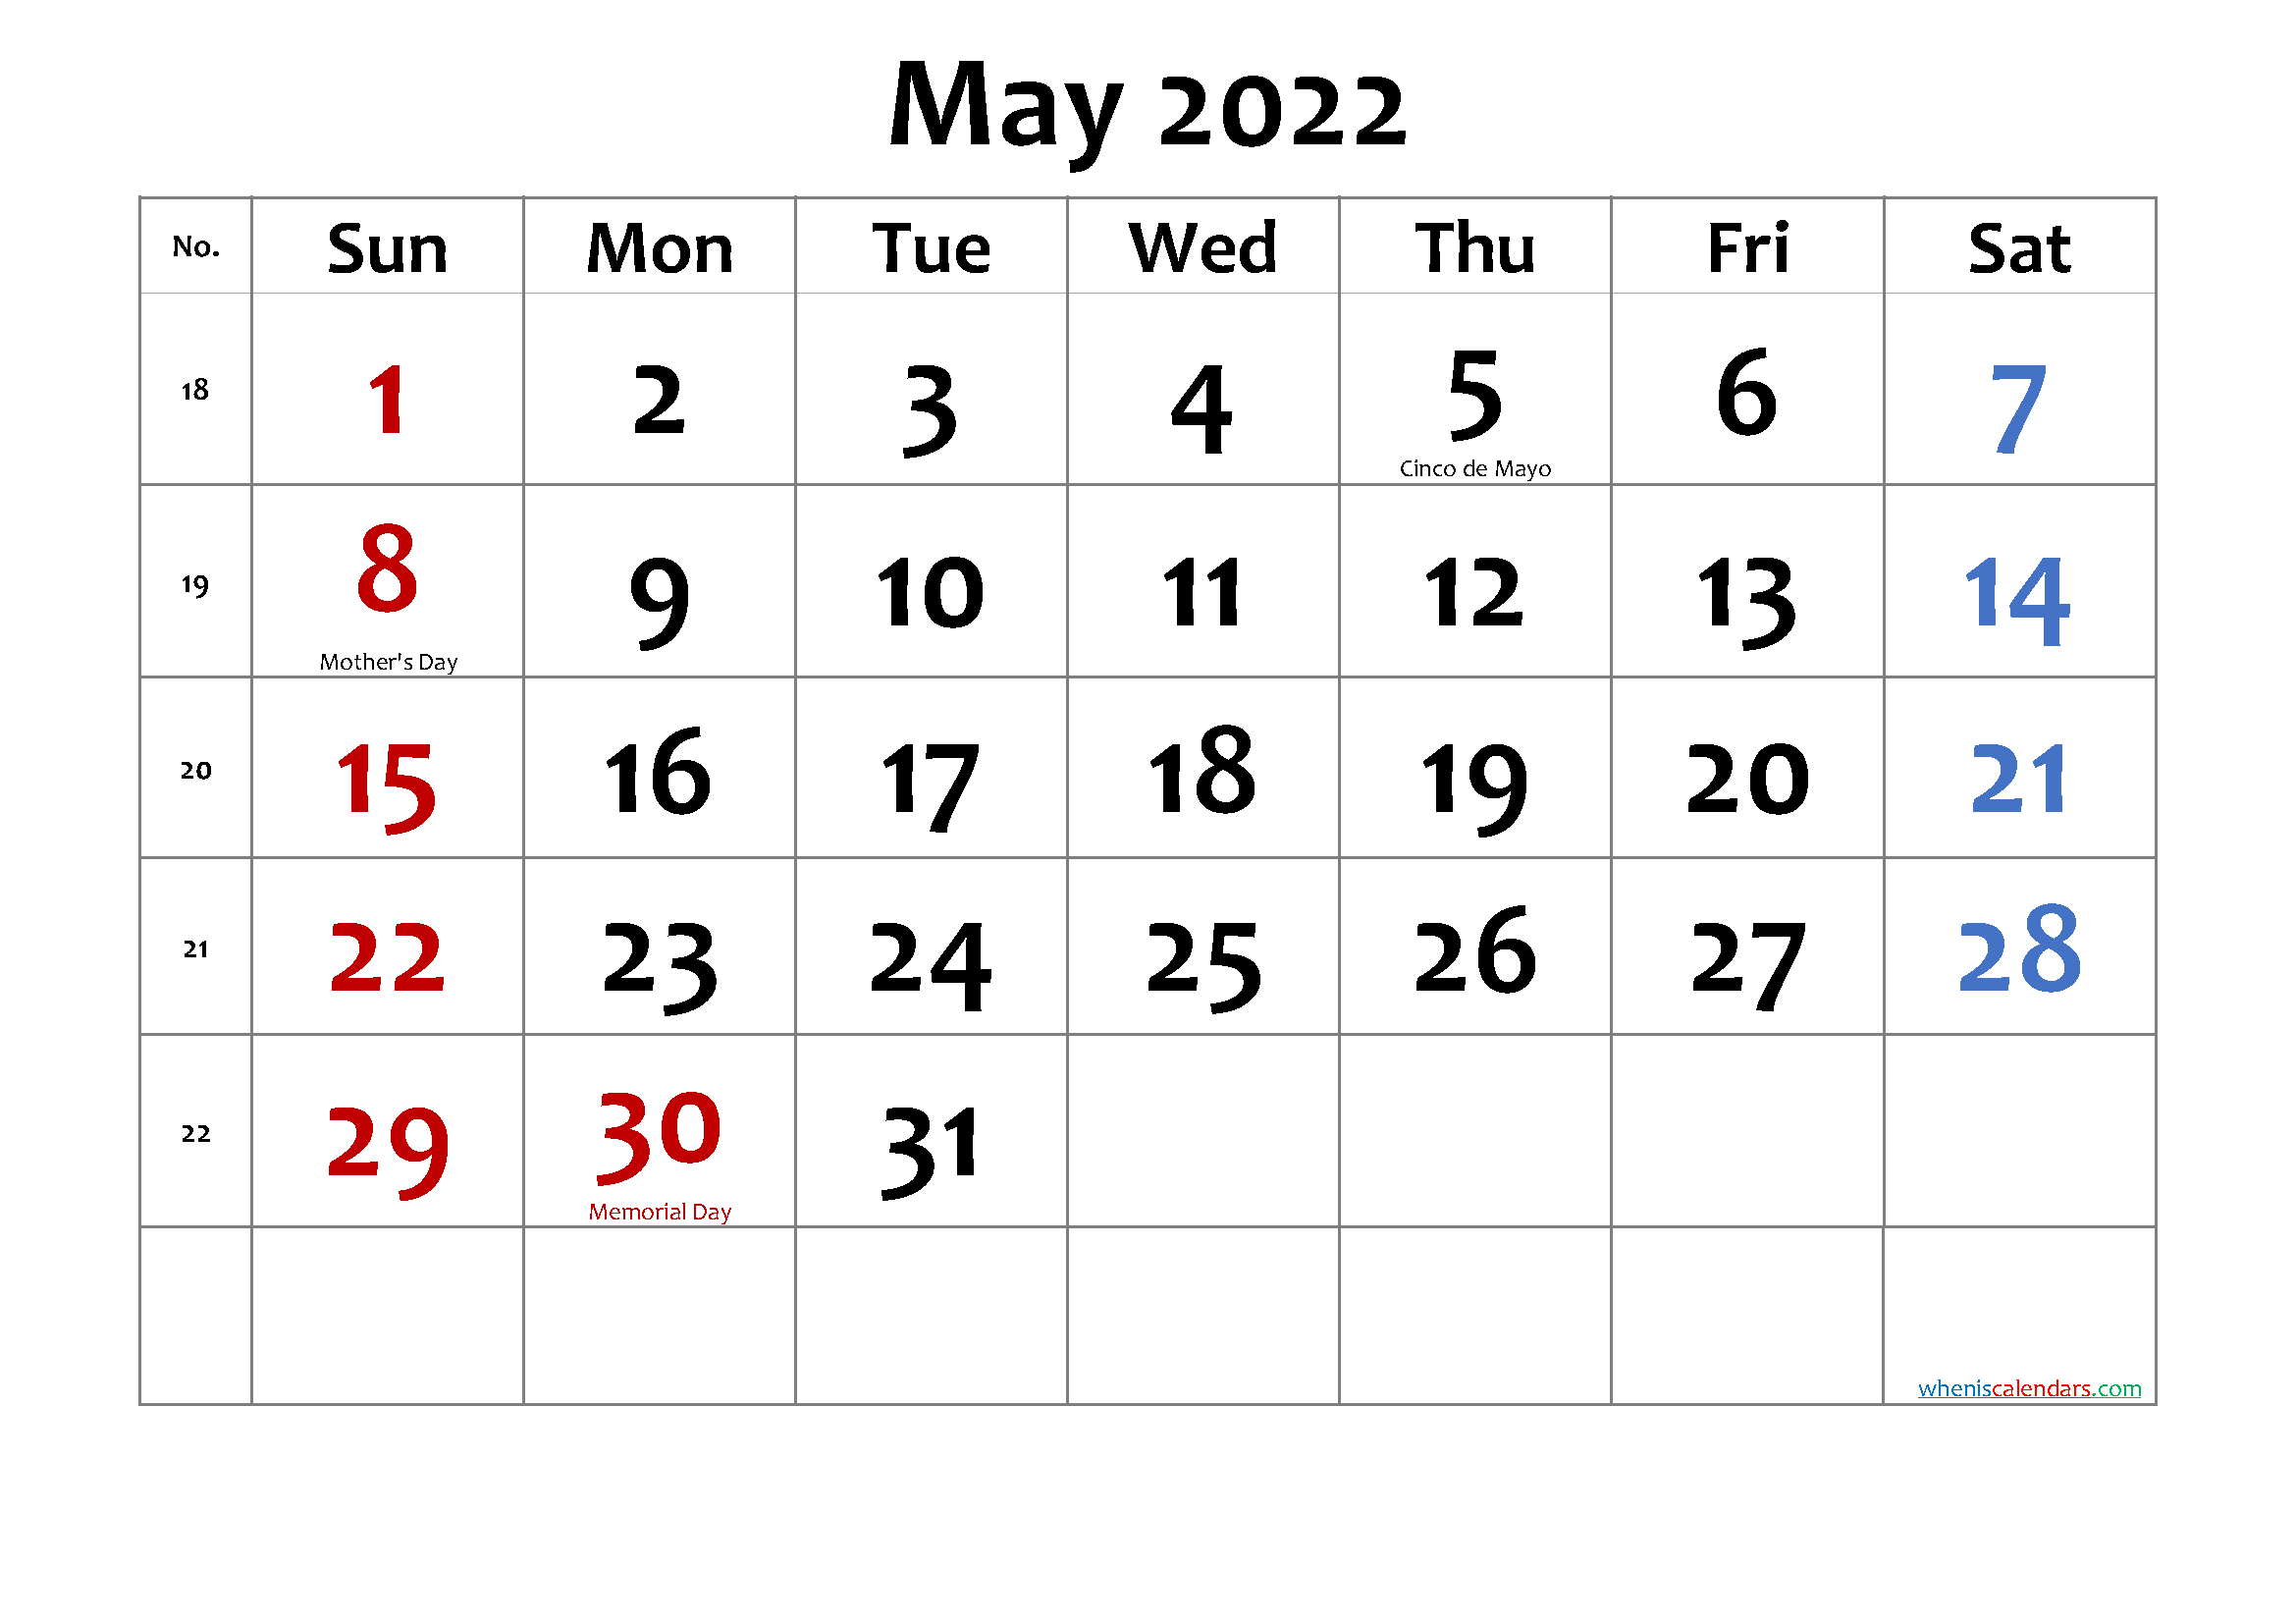 May 2022 Printable Calendar with Holidays - Free Printable ...